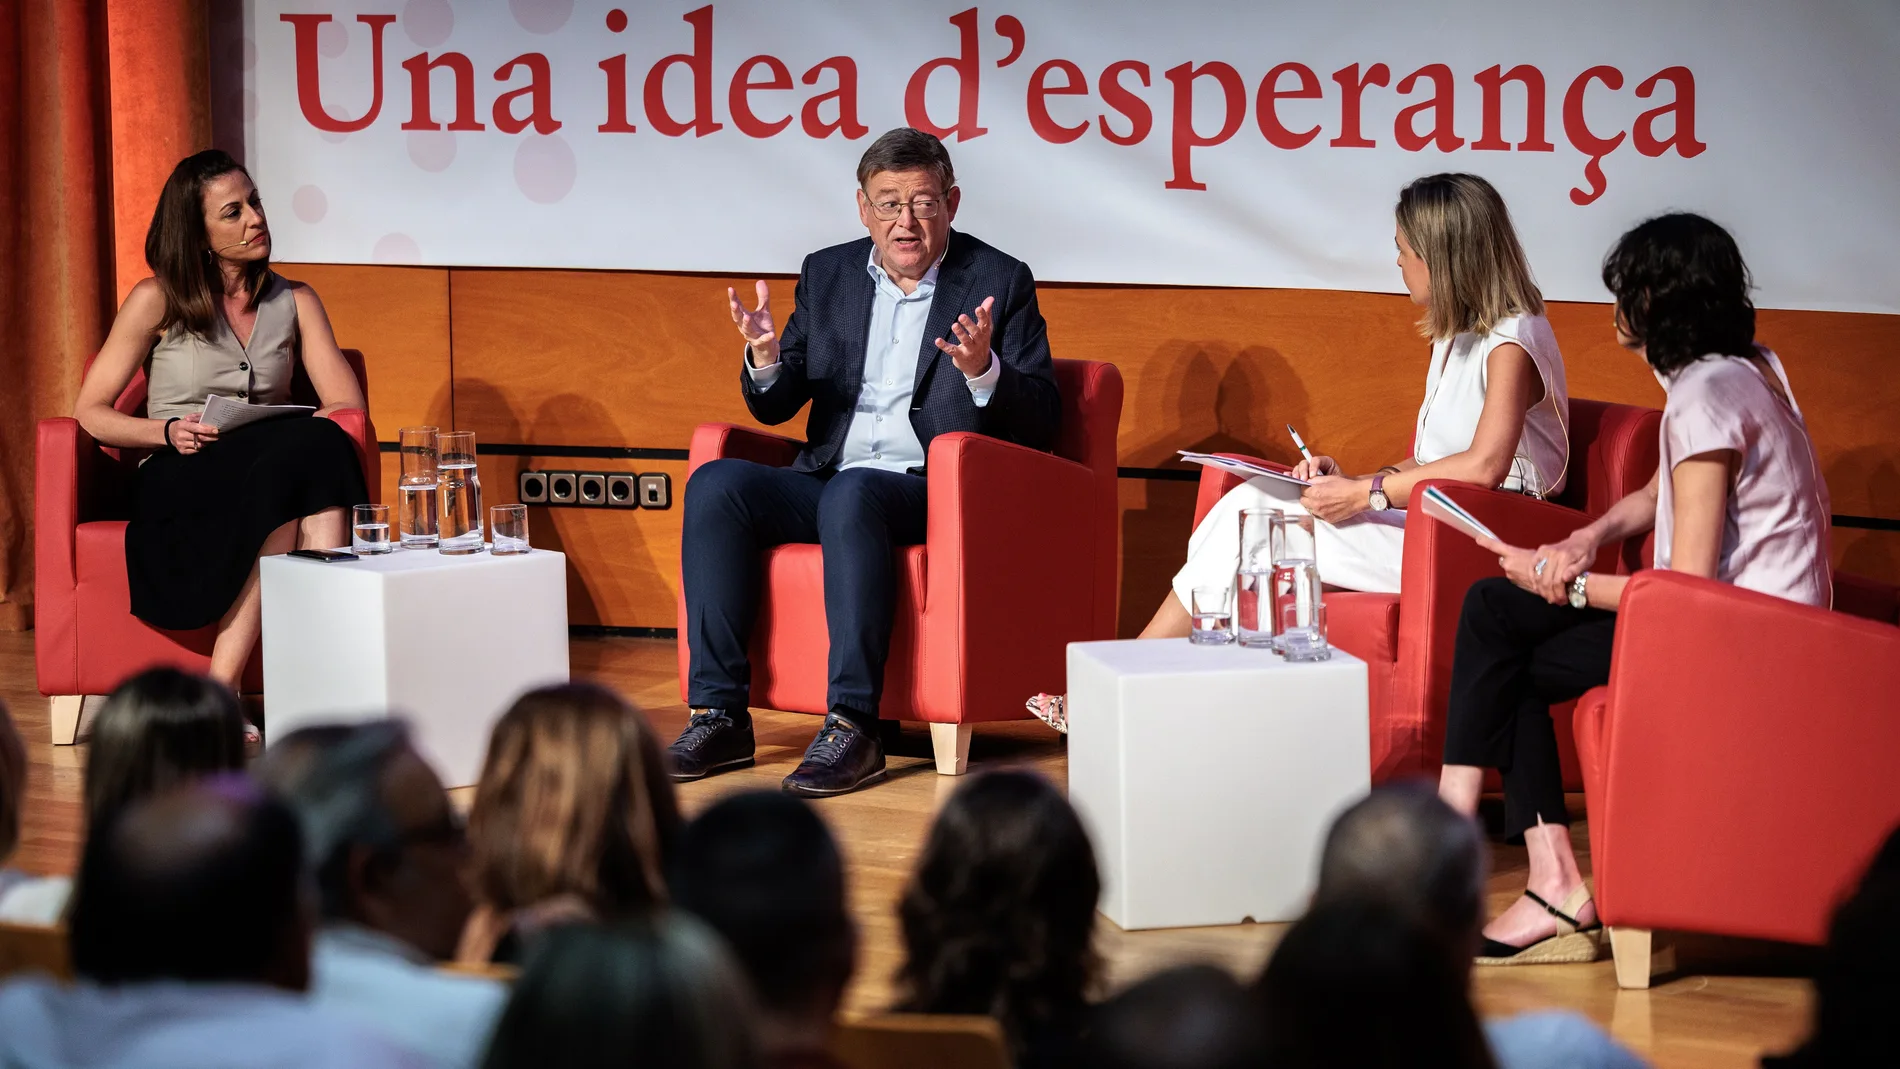 De izquierda a derecha, la periodista de La Razón, Ana Garrido; el presidente Puig y las periodistas Ana Matamales y Ana Talens 